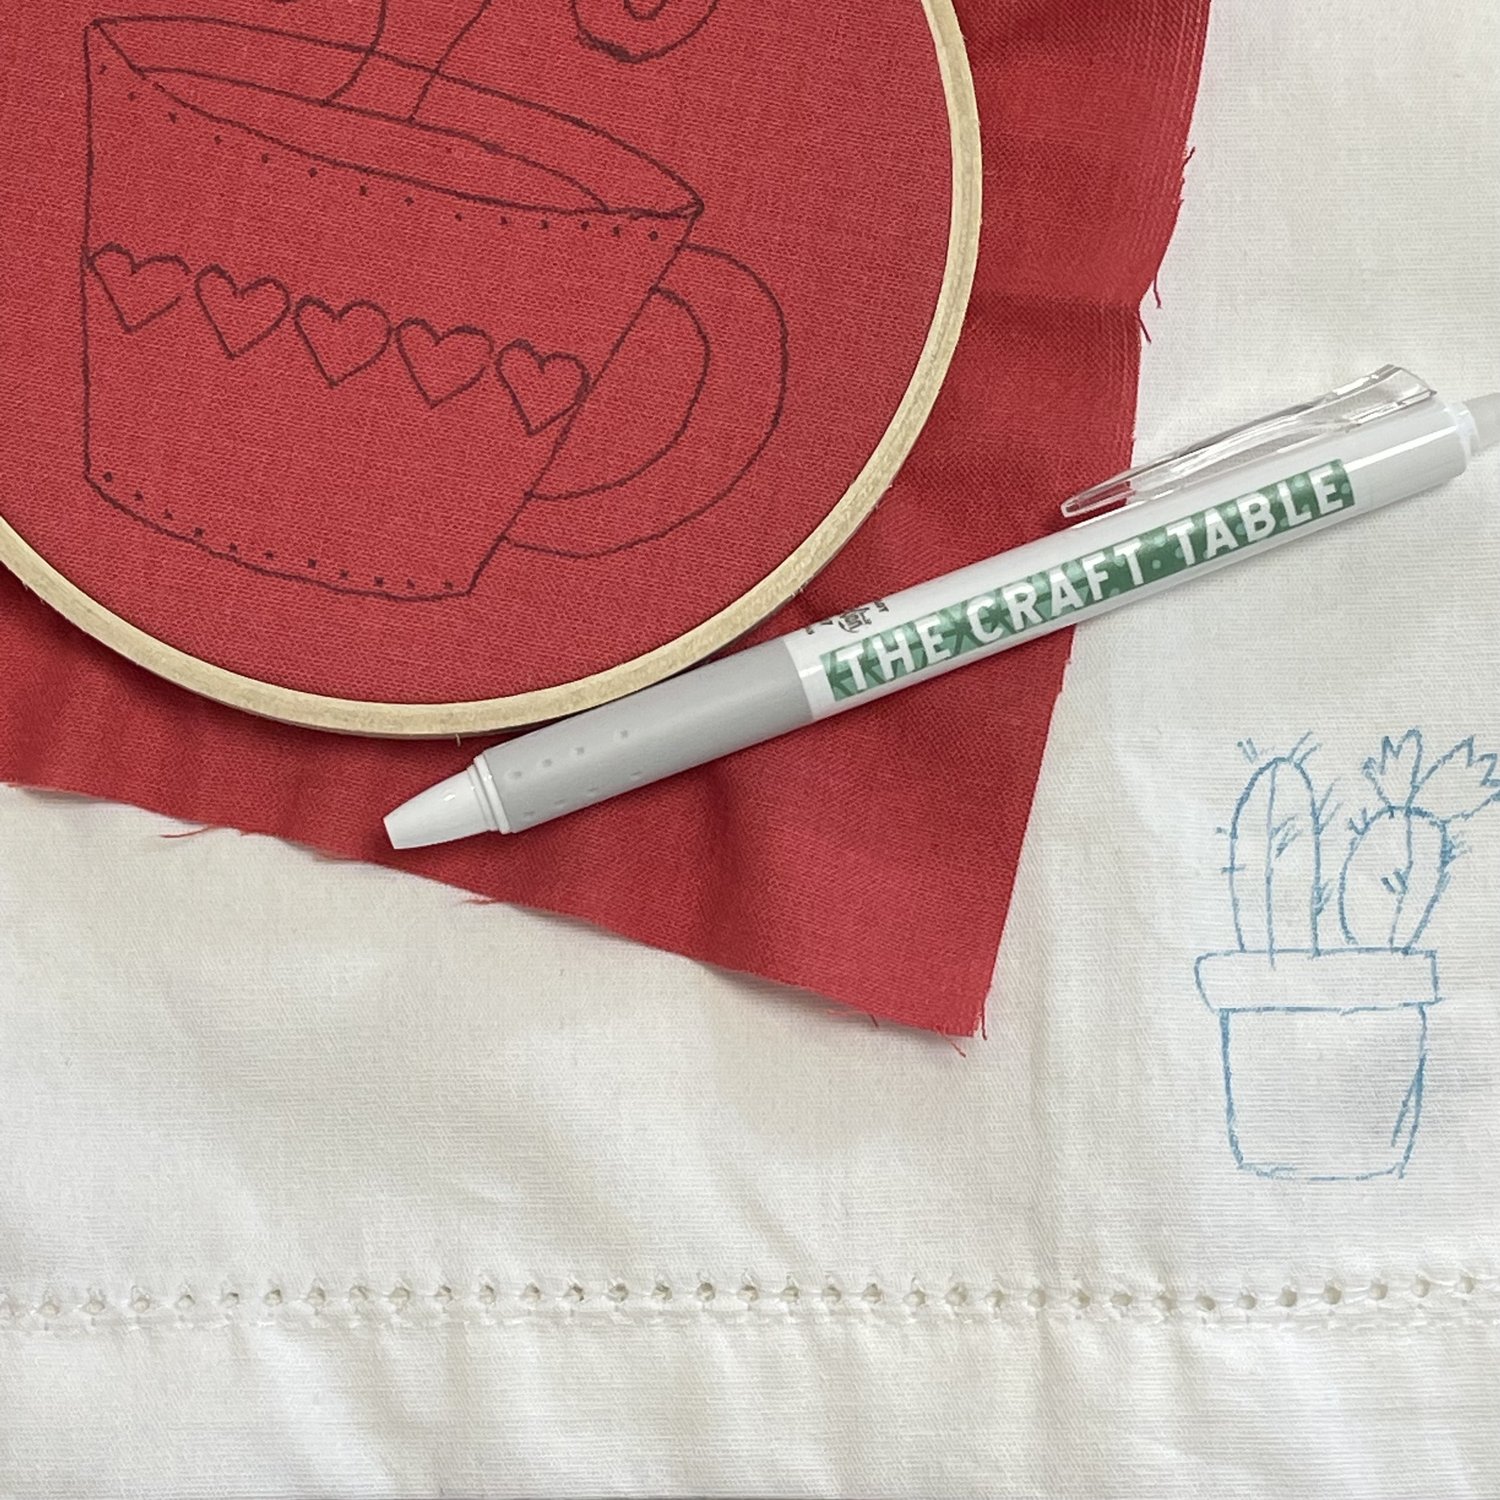 FriXion Erasable Pen — Weft Fabric & Needlework Shop